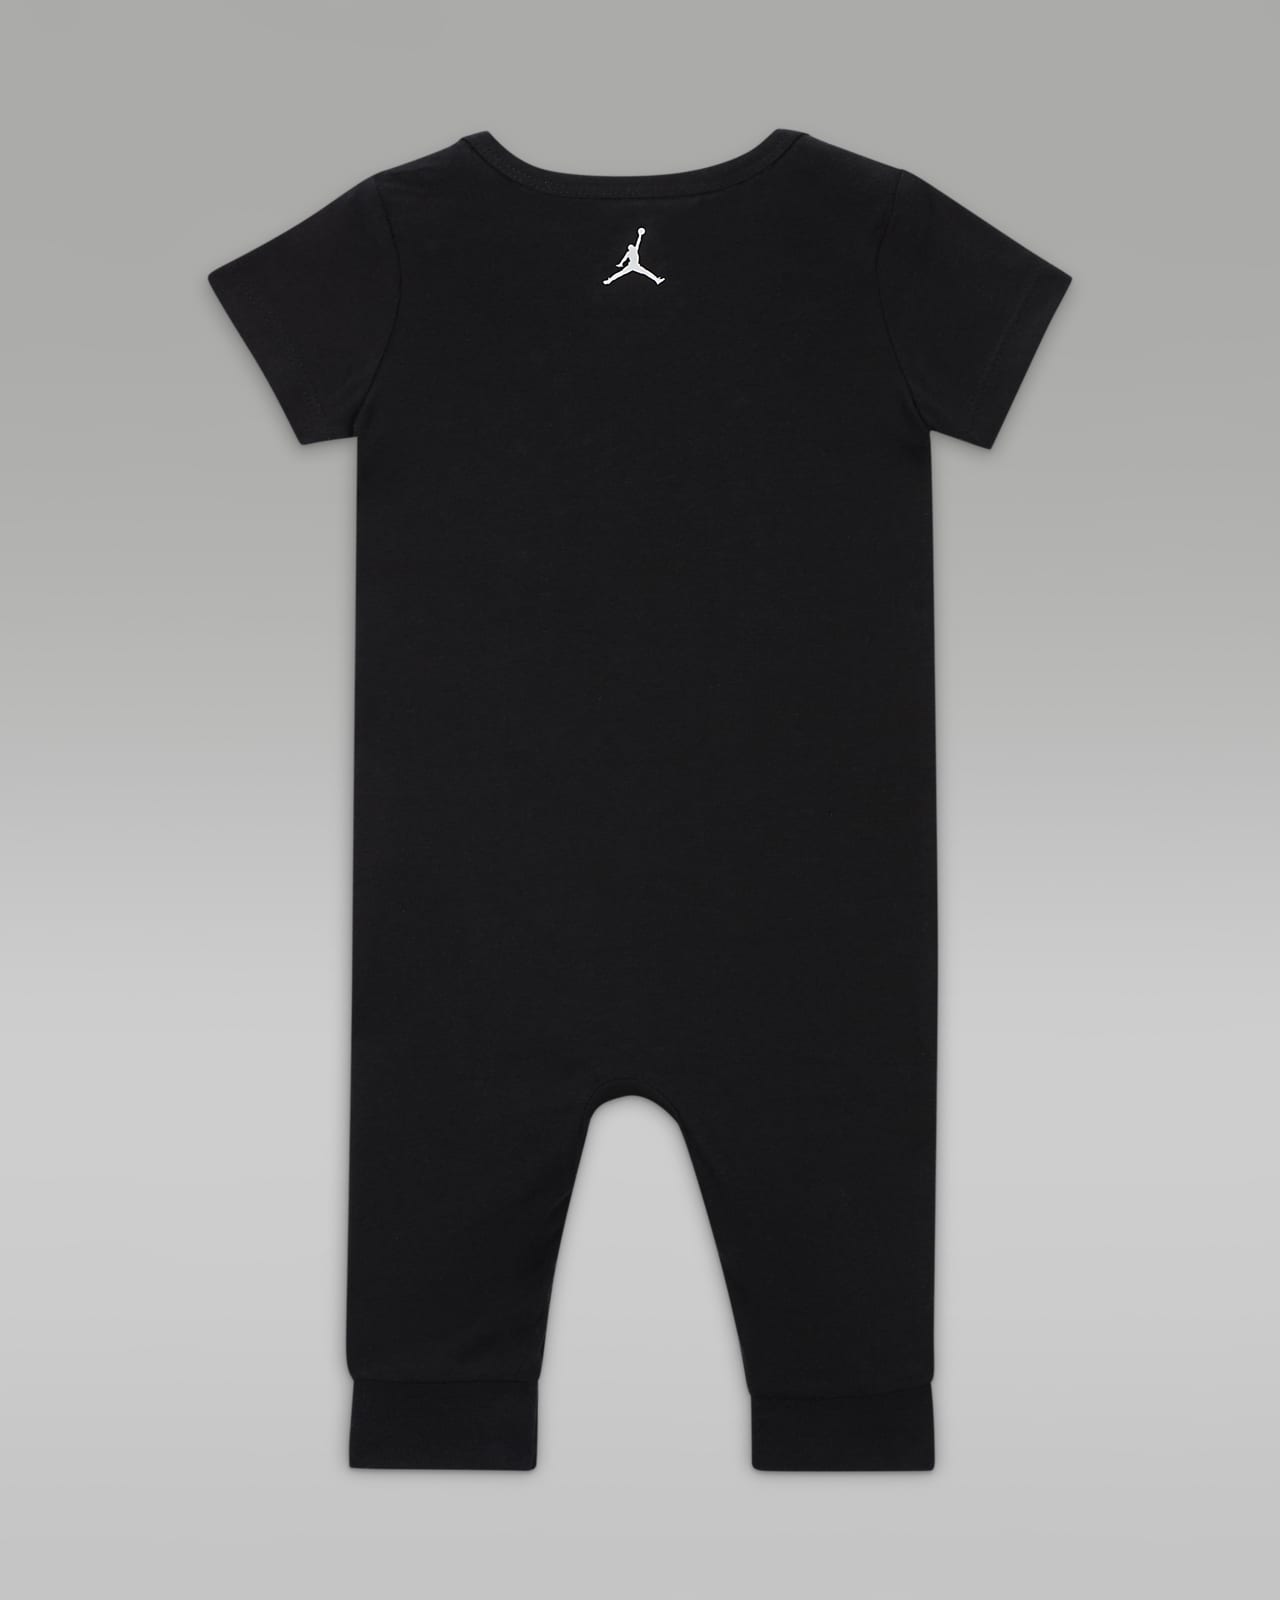 Air Jordan Baby (0-9M) Romper